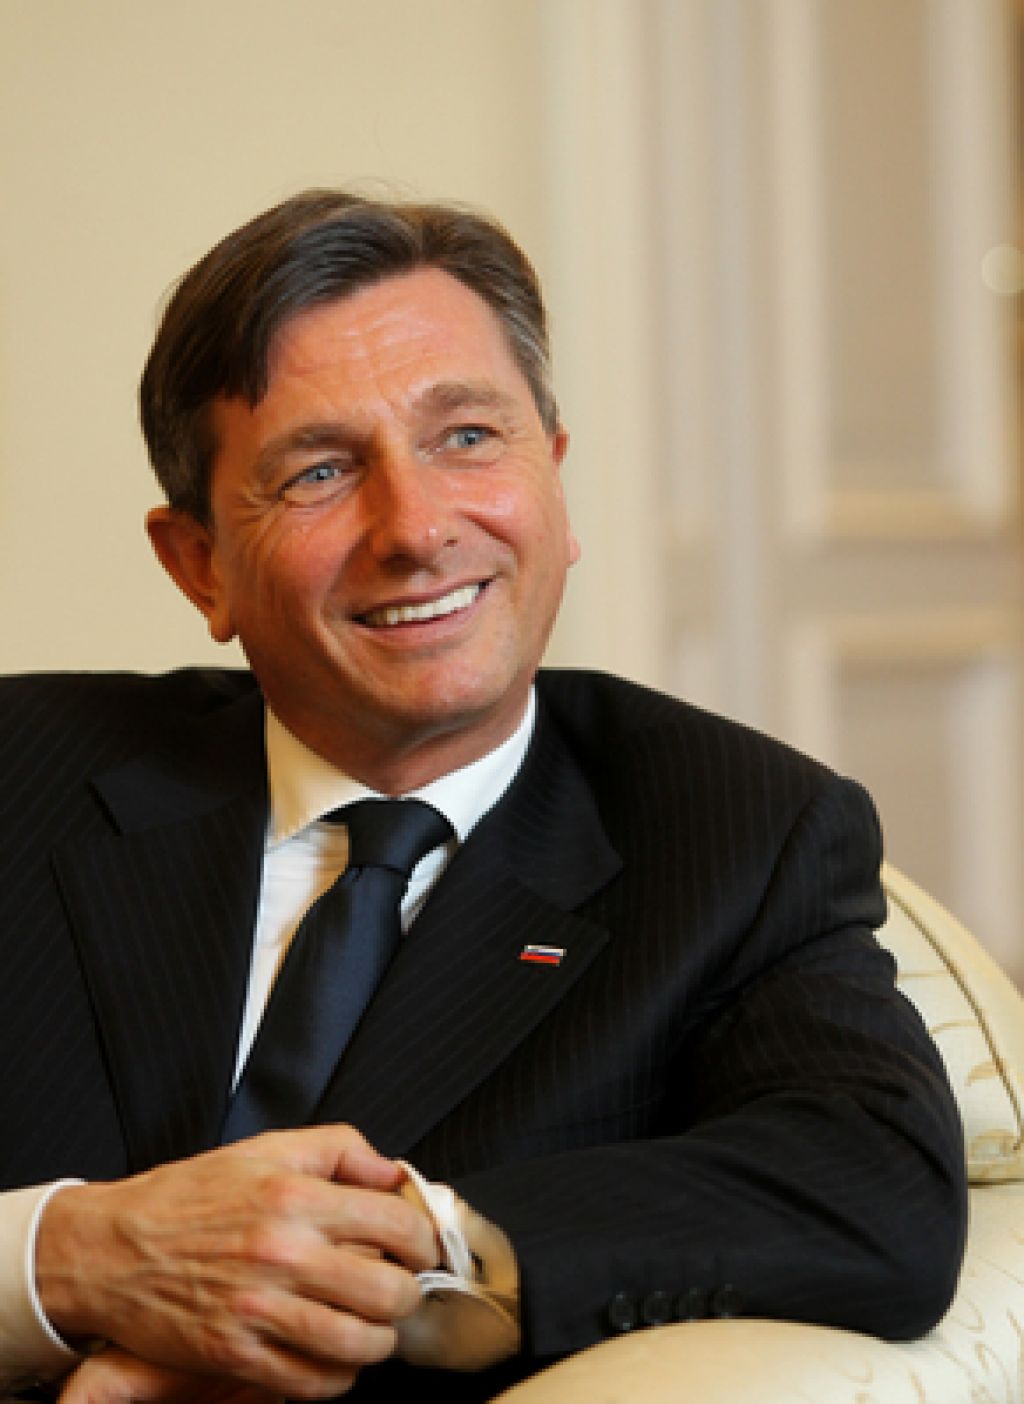 Pahor o rokovanju z Janšo: Menil sem, da je prav, da to storim